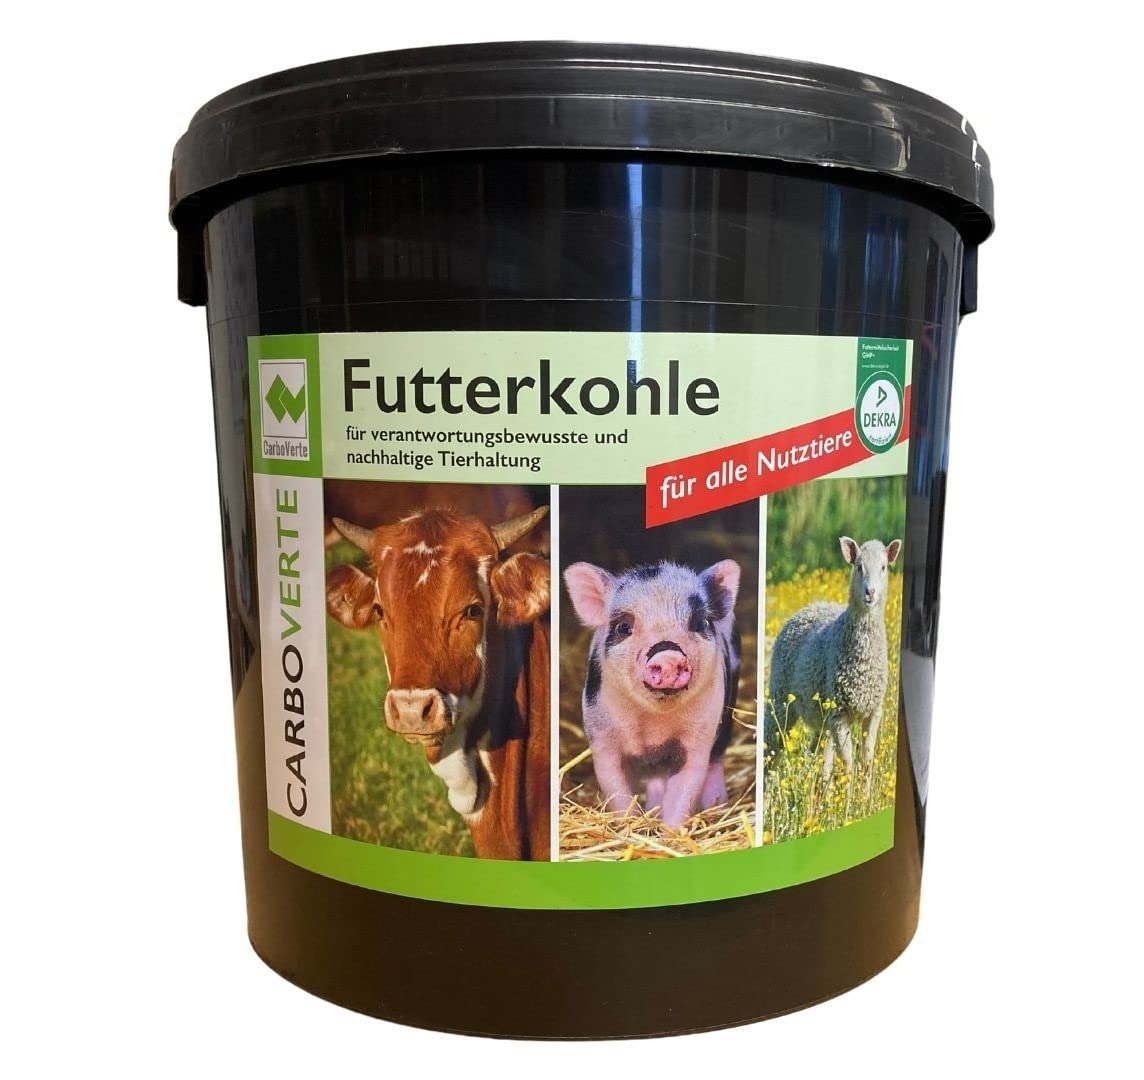 7 kg CarboVerte Futterkohle für Pferde, Rinder, Schweine und Geflügel, nach GMP+ FSA gesichert, 100% pflanzliche Kohle, staubfrei